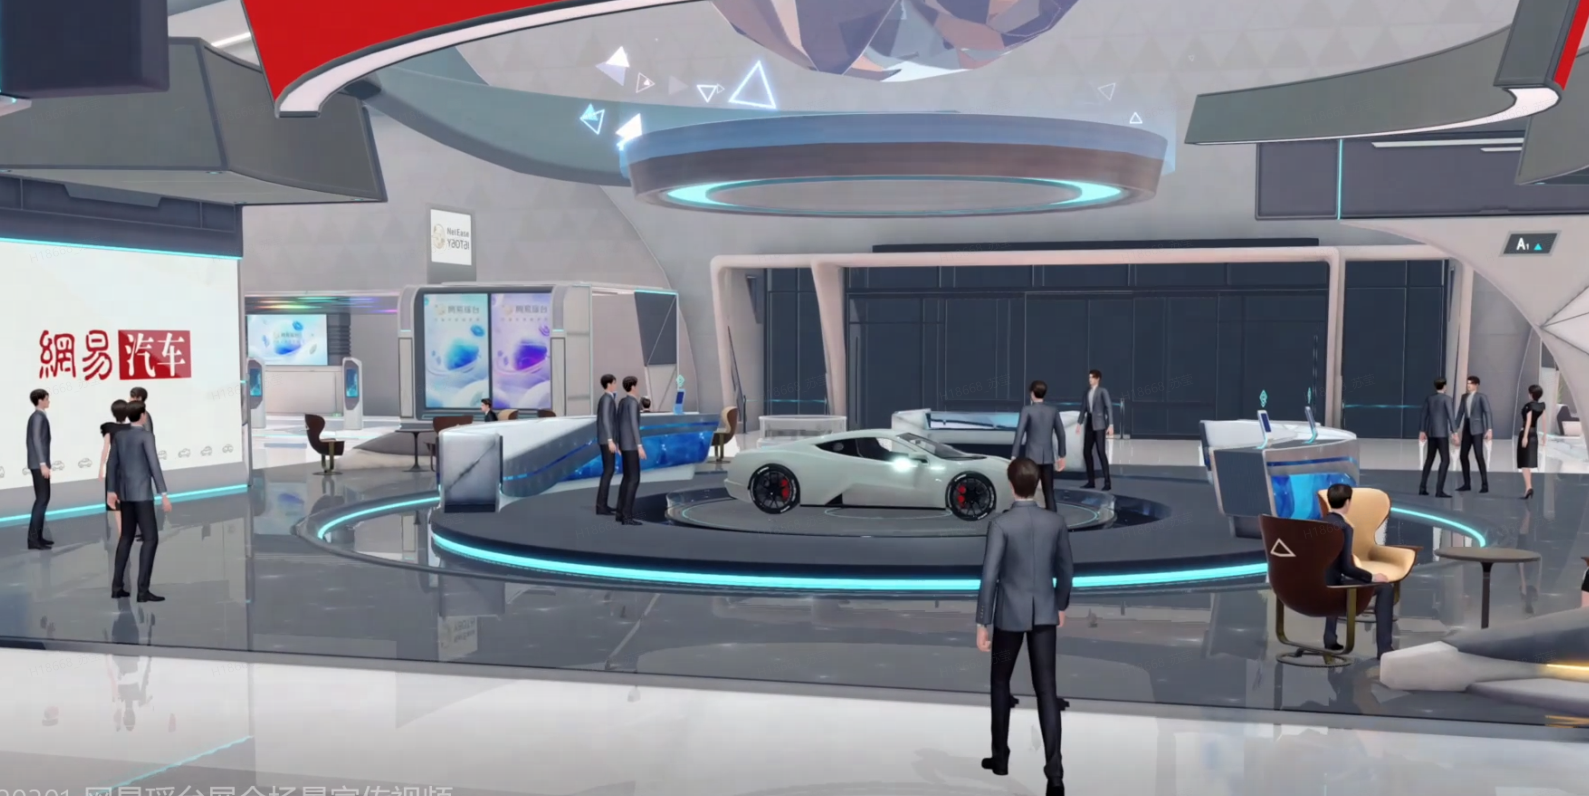 这是一张展示现代汽车展厅的图片，里面有多位参观者和几辆展出的汽车，环境科技感强，设计现代化。